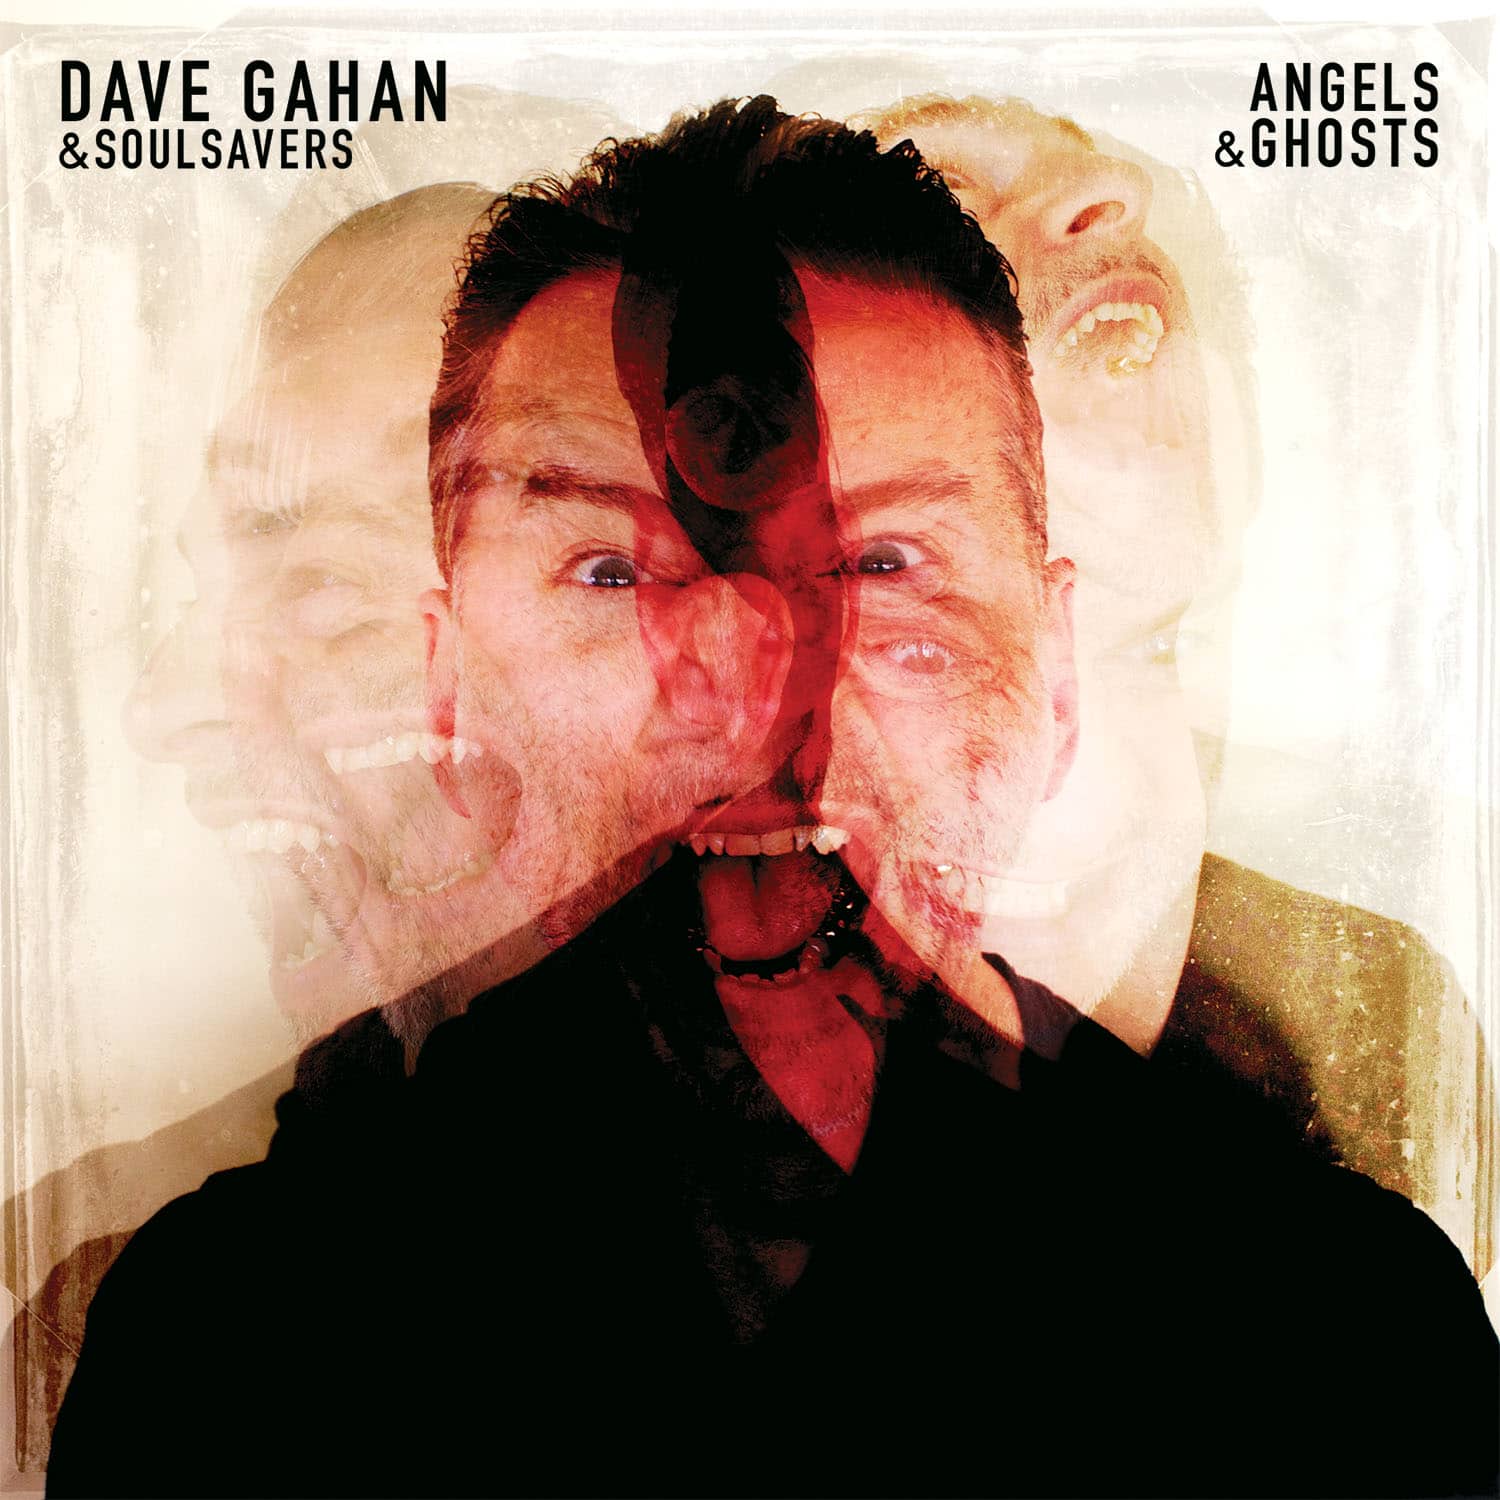 Dave Gahan & Soulsavers album cover